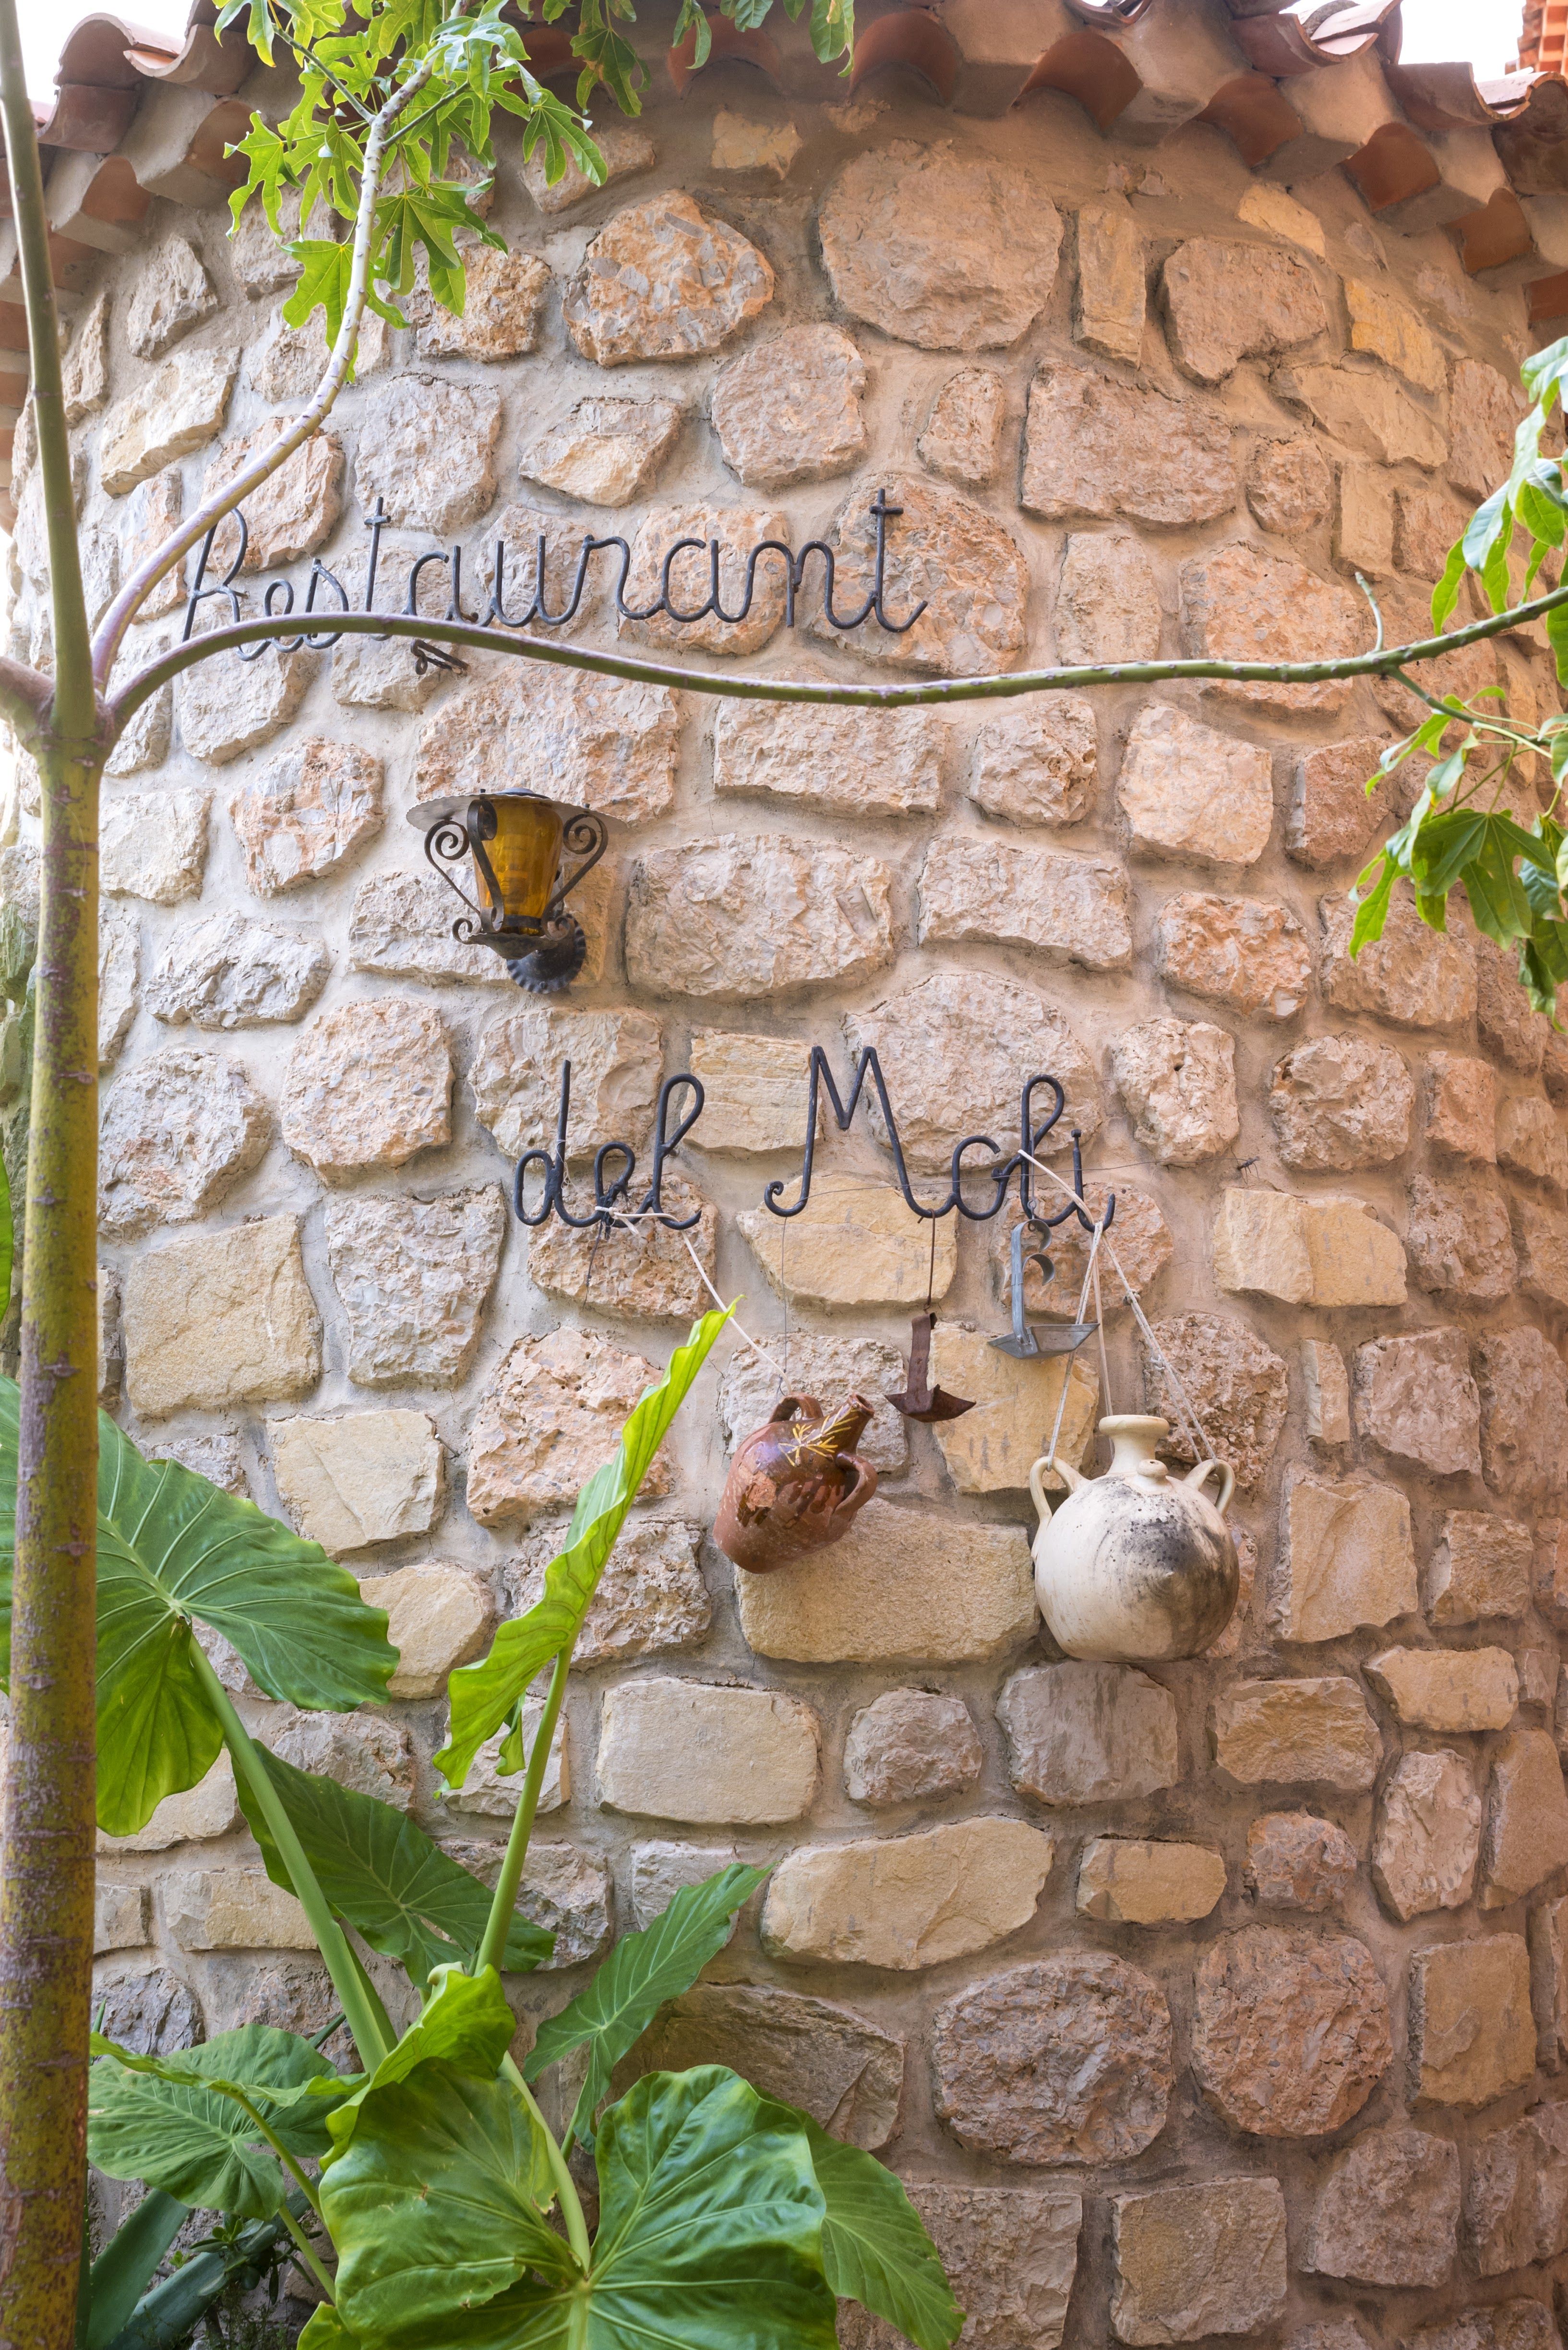 Foto 5 de Restaurante de cocina mediterránea en  | Restaurante Font del Molí